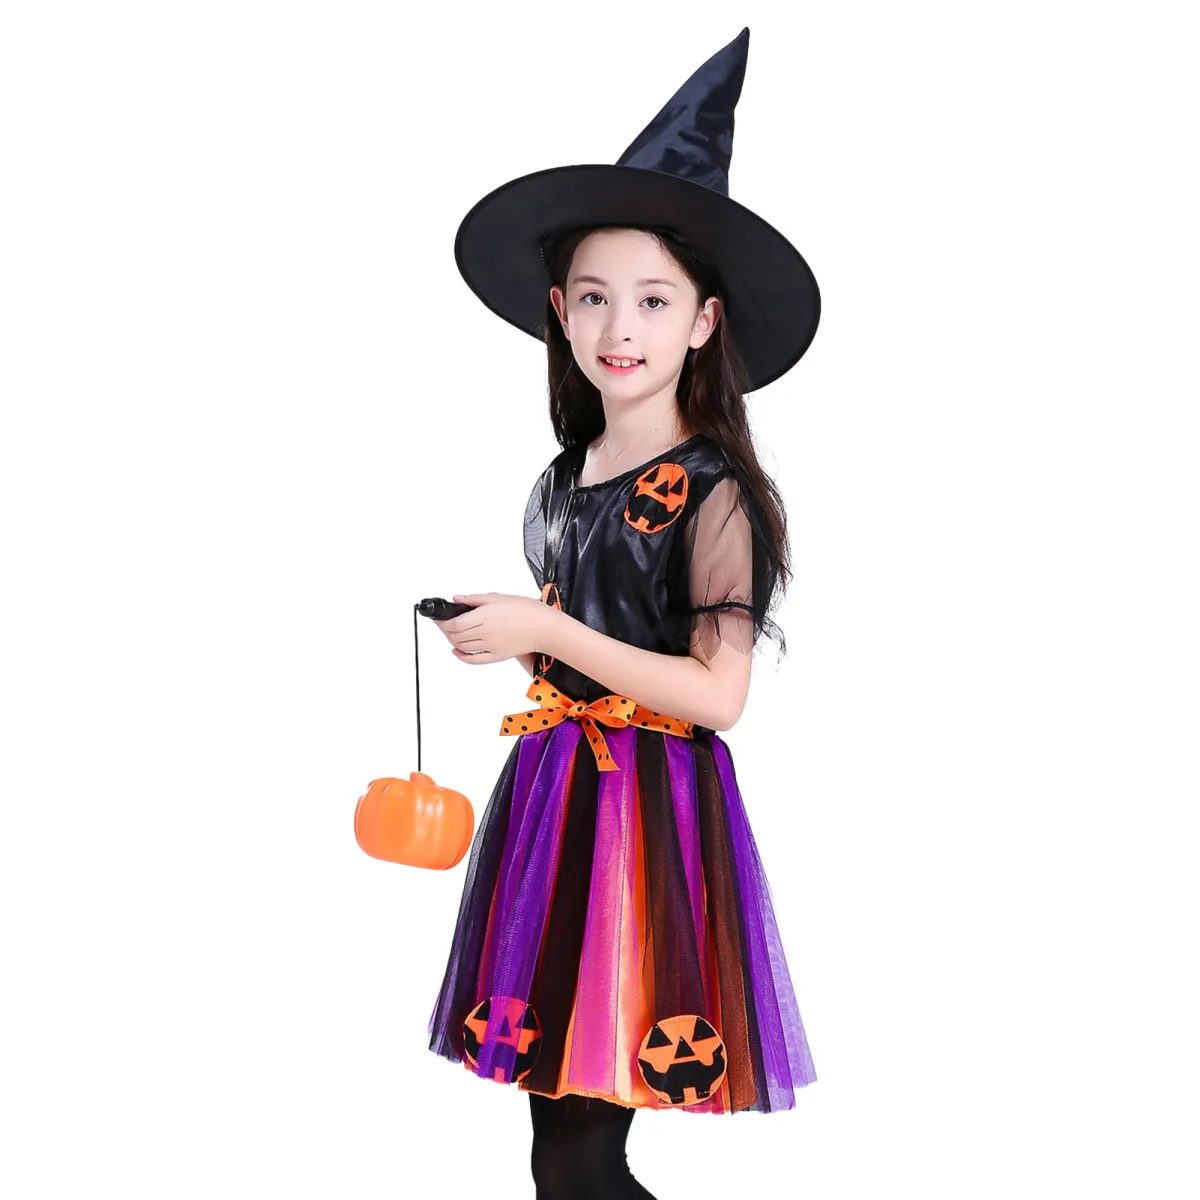 Bộ Váy Halloween: Hãy khám phá bộ sưu tập vải hóa trang Halloween cực đáng yêu đến từ chúng tôi. Chỉ cần một chiếc váy Halloween đẹp, bạn sẽ trông thật nổi bật và thu hút trong đêm tiệc. Click vào hình ảnh để khám phá thêm nhiều mẫu váy độc đáo khác nhé!